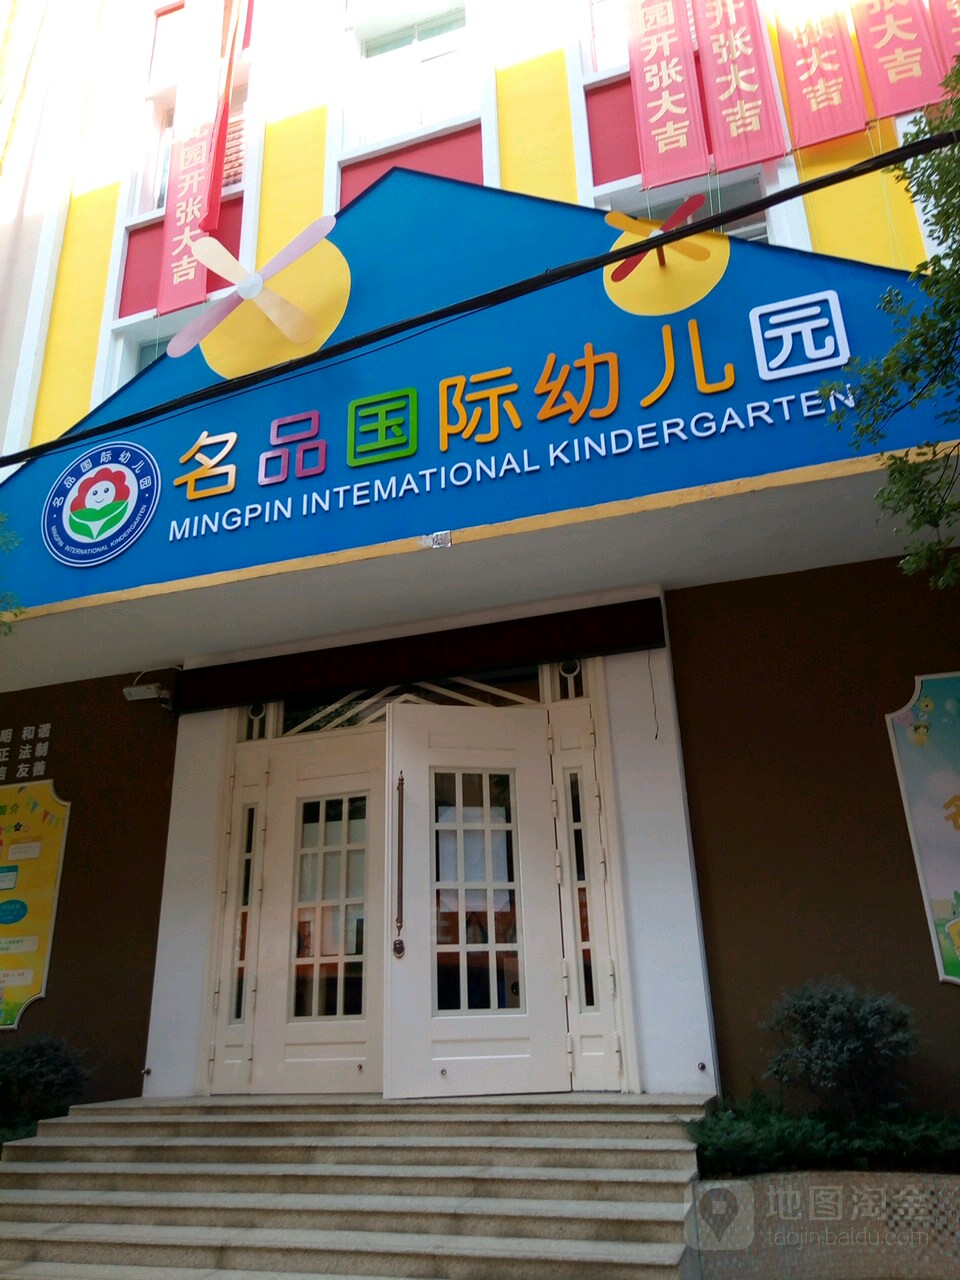 名品国际幼儿园